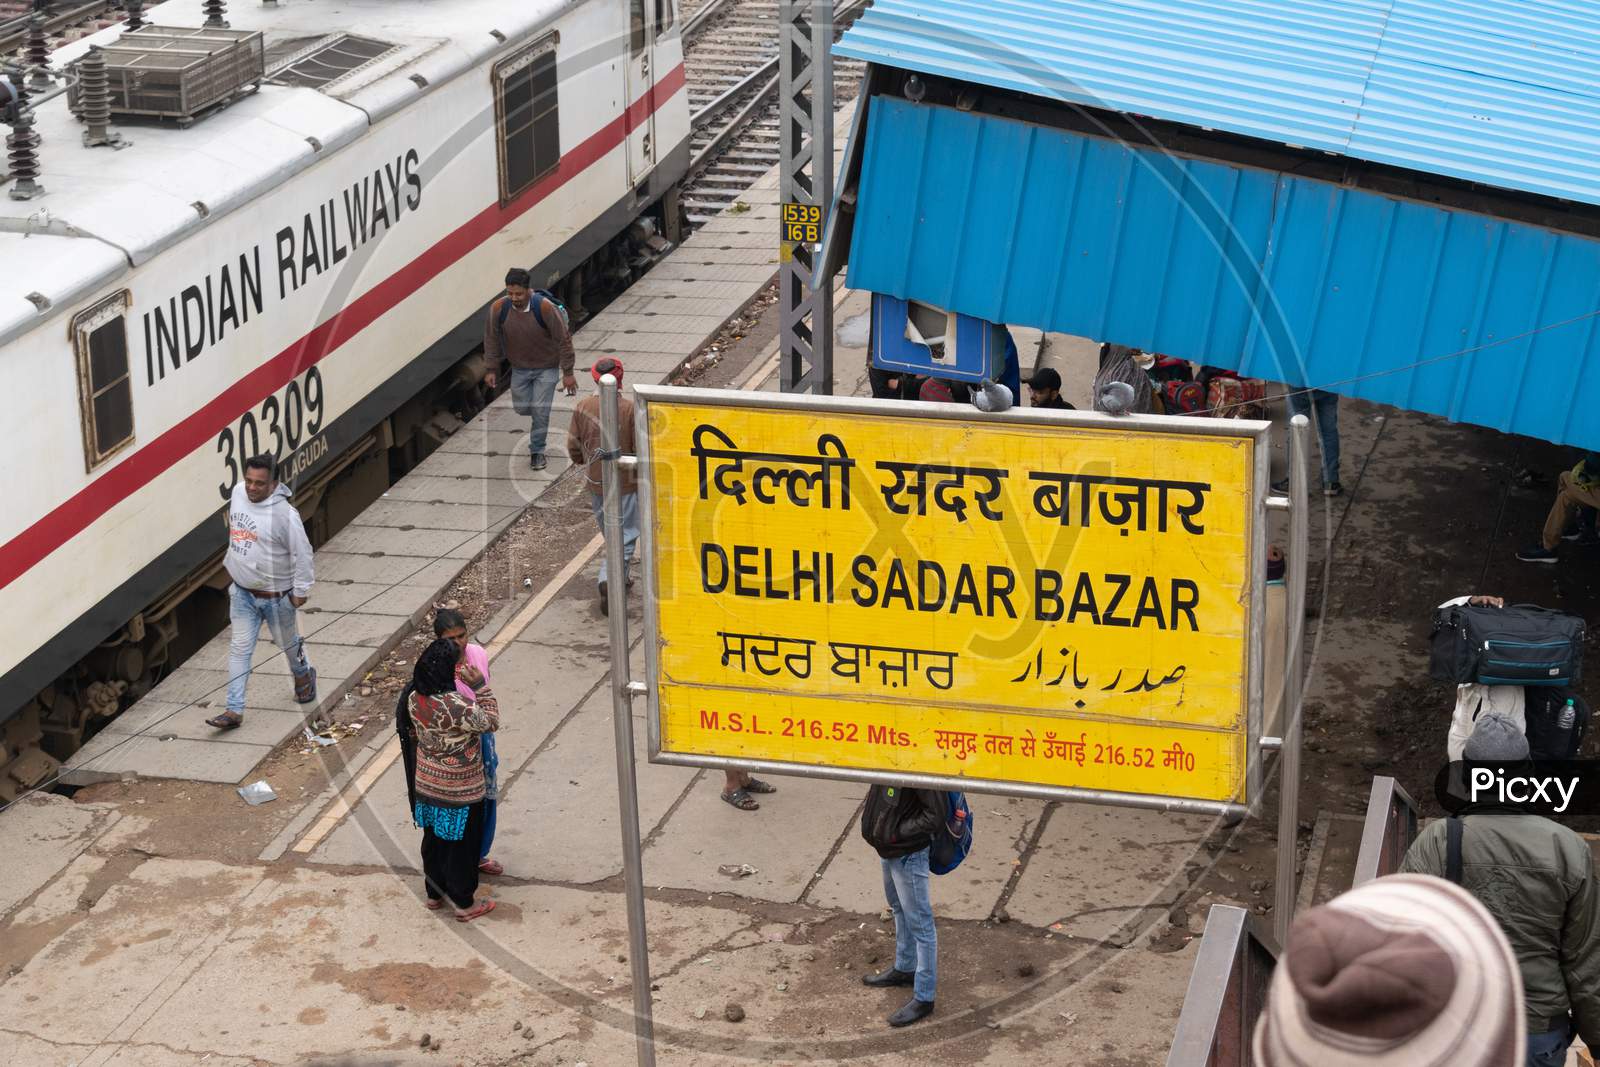 sign board for Delhi sadar bazar railway station and Indian railway engine